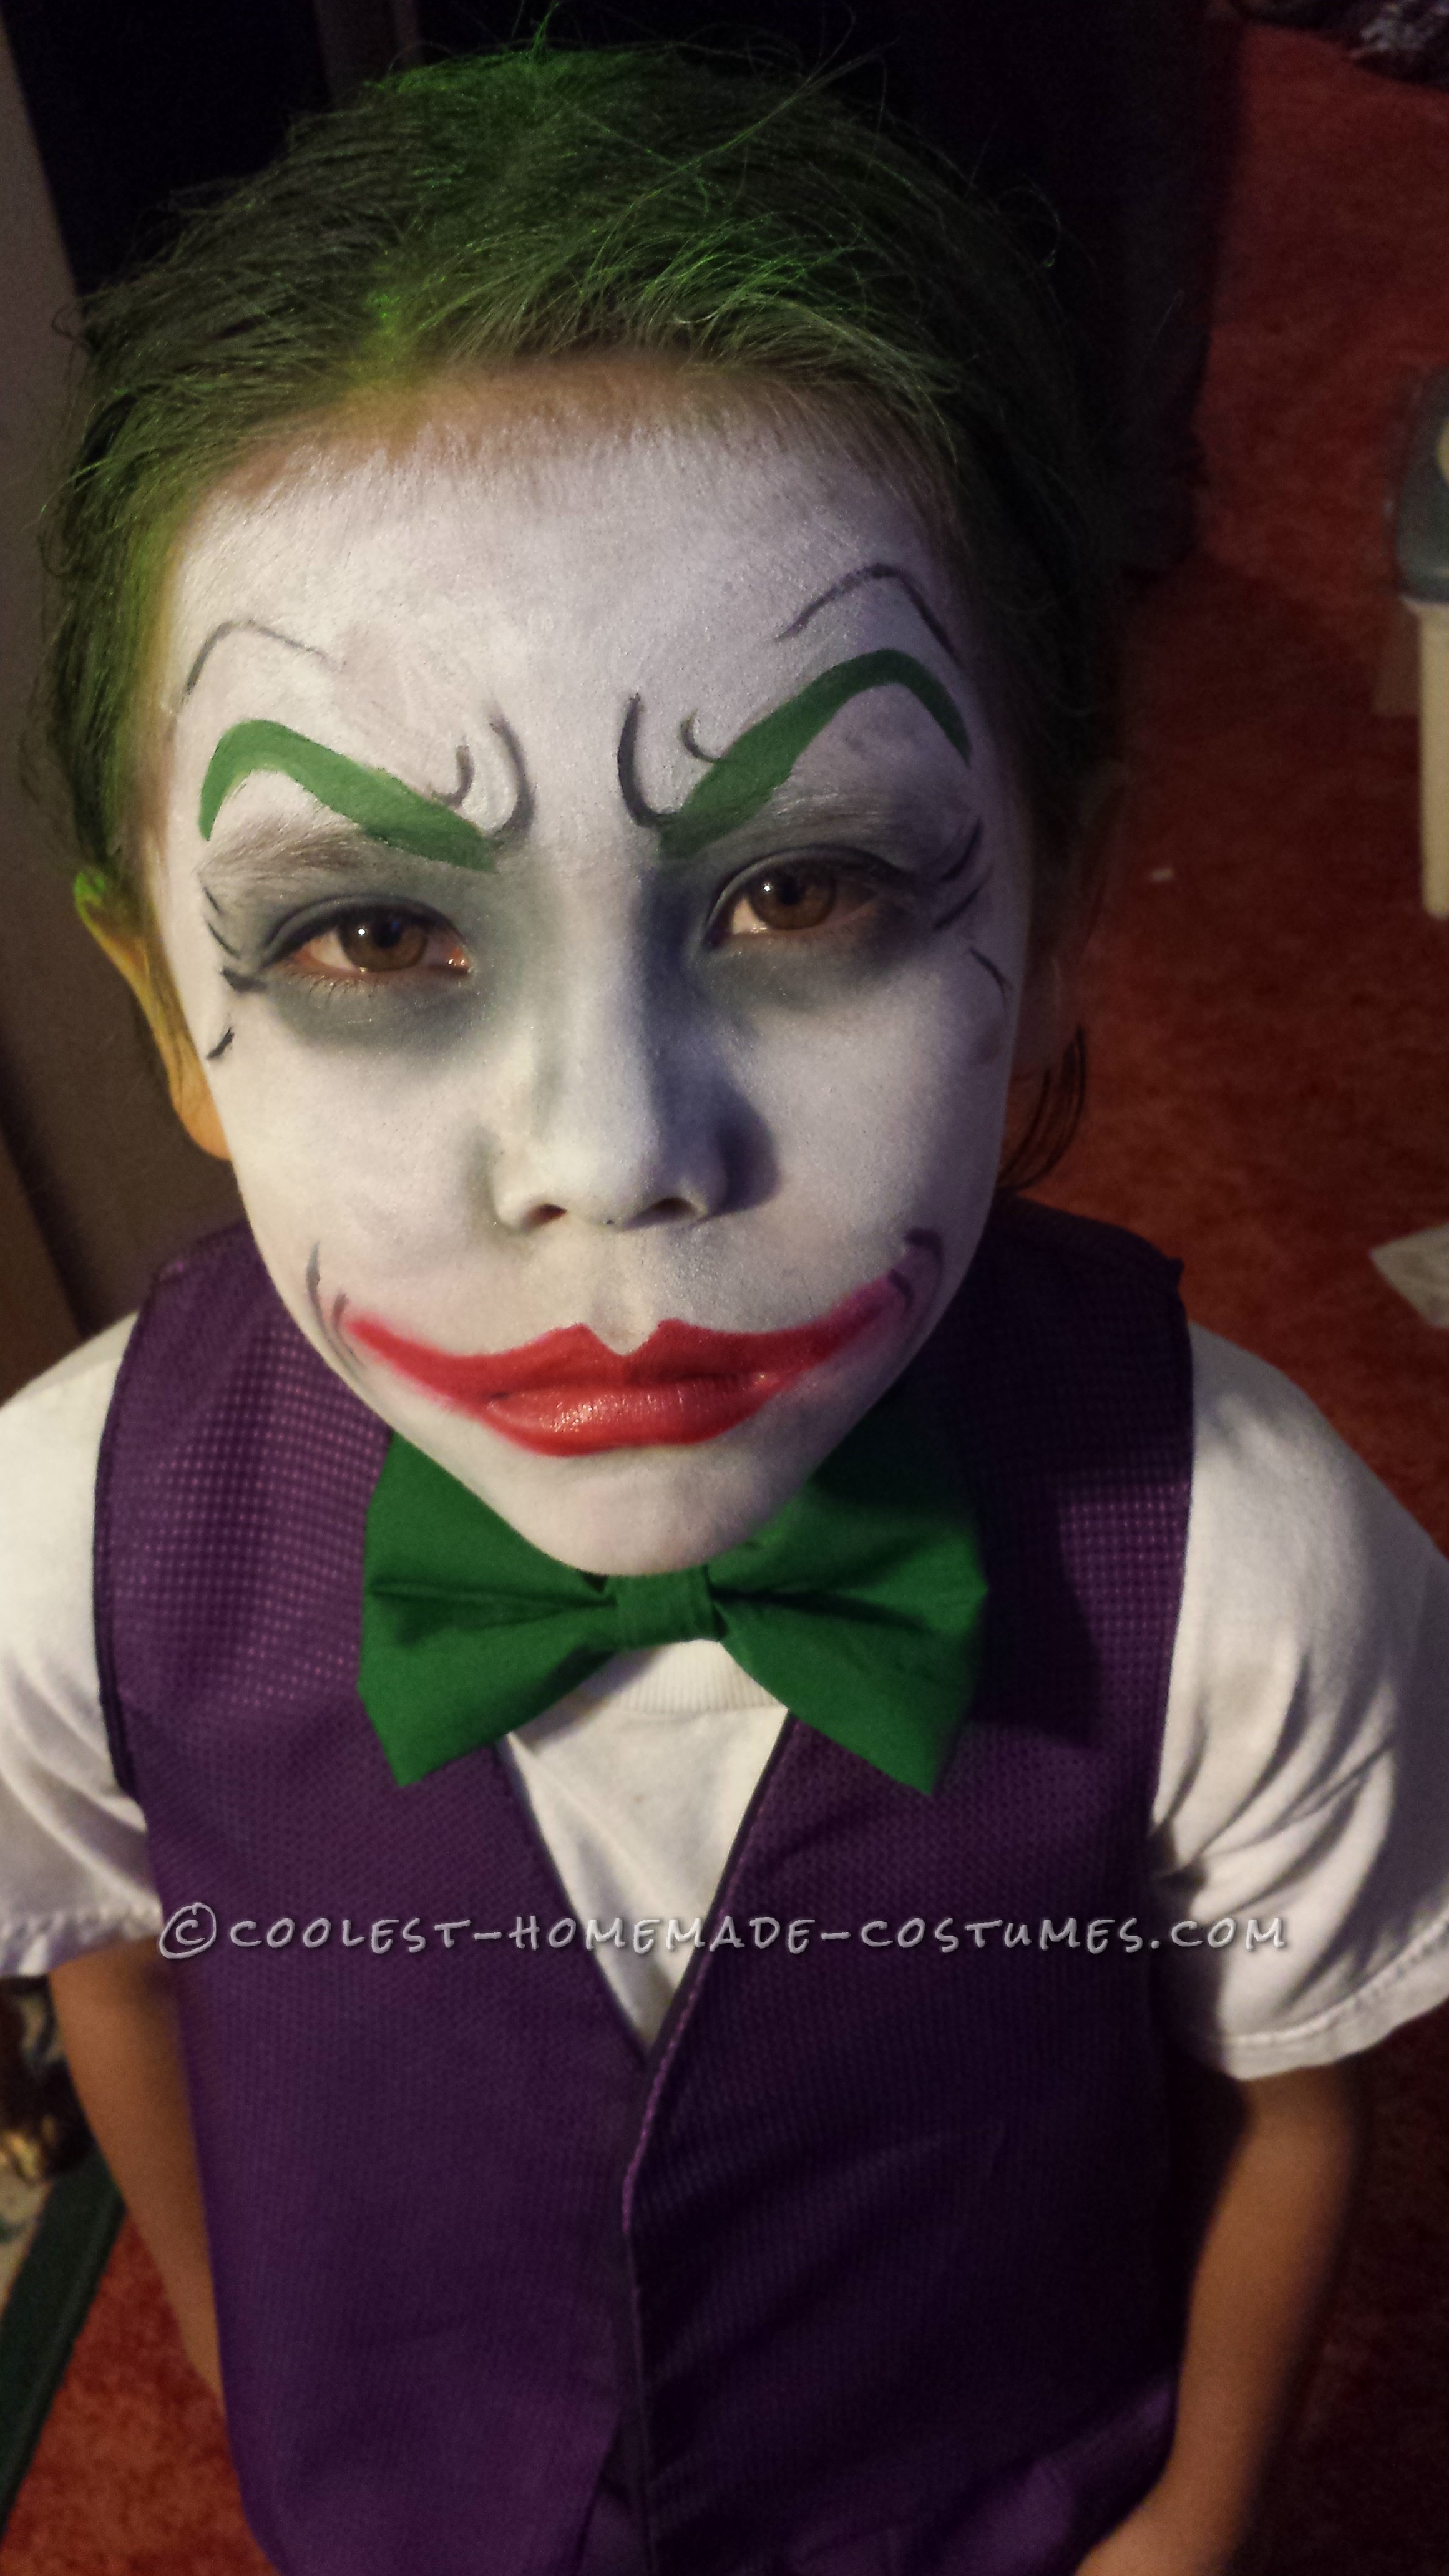 The Little Joker and Harley Quinn Homemade Costumes